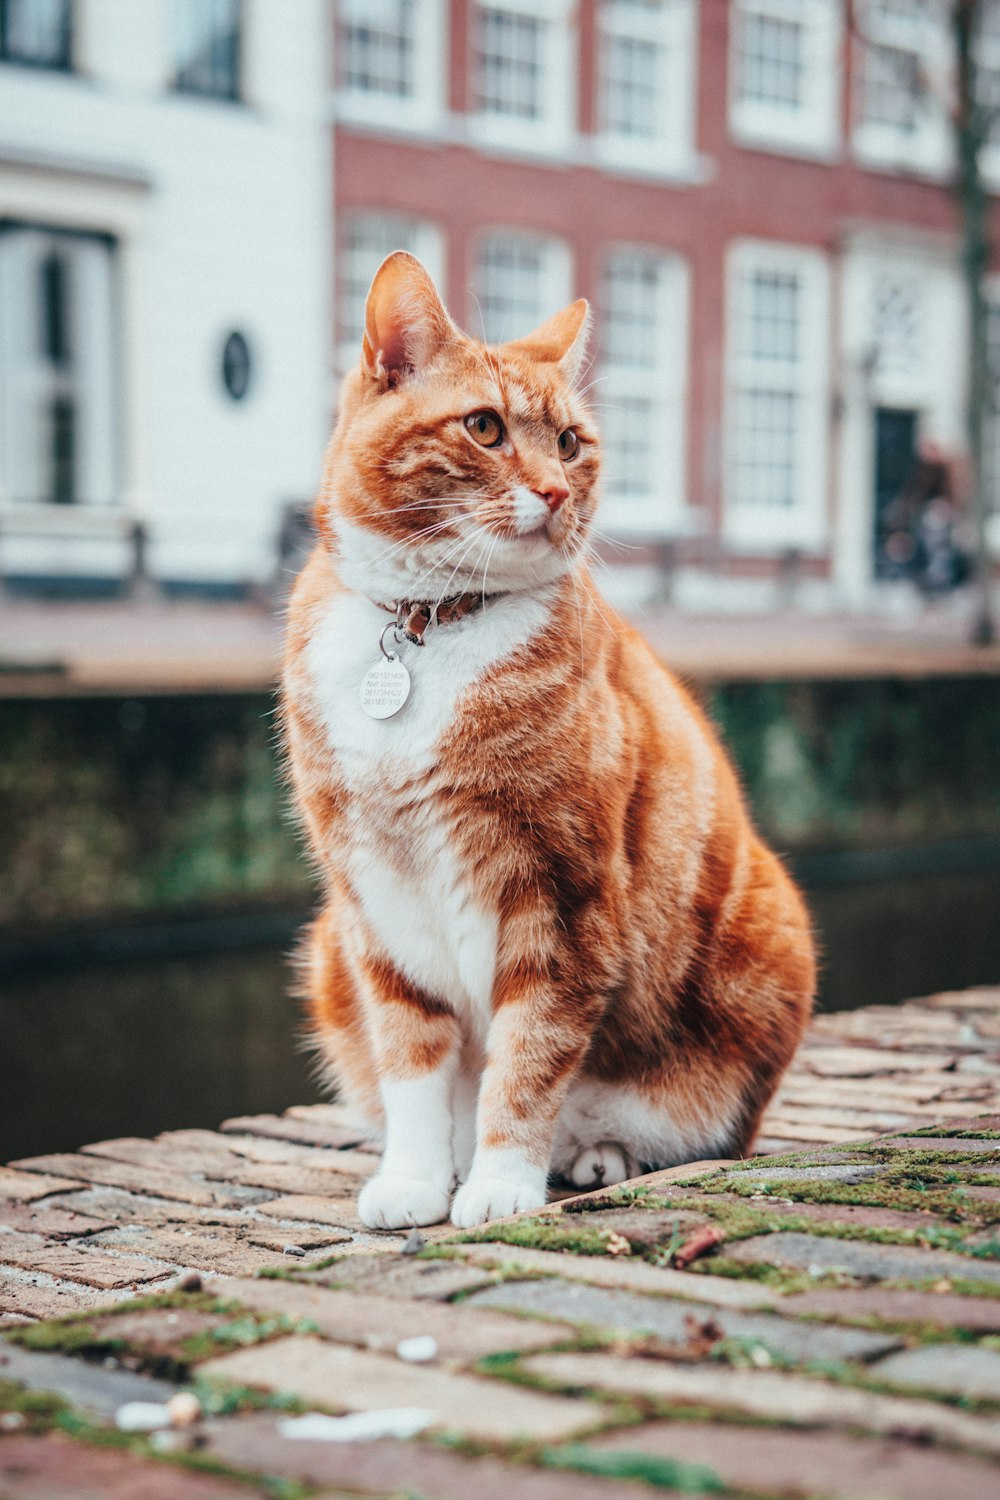 Fotografía de enfoque selectivo de gato atigrado naranja y blanco